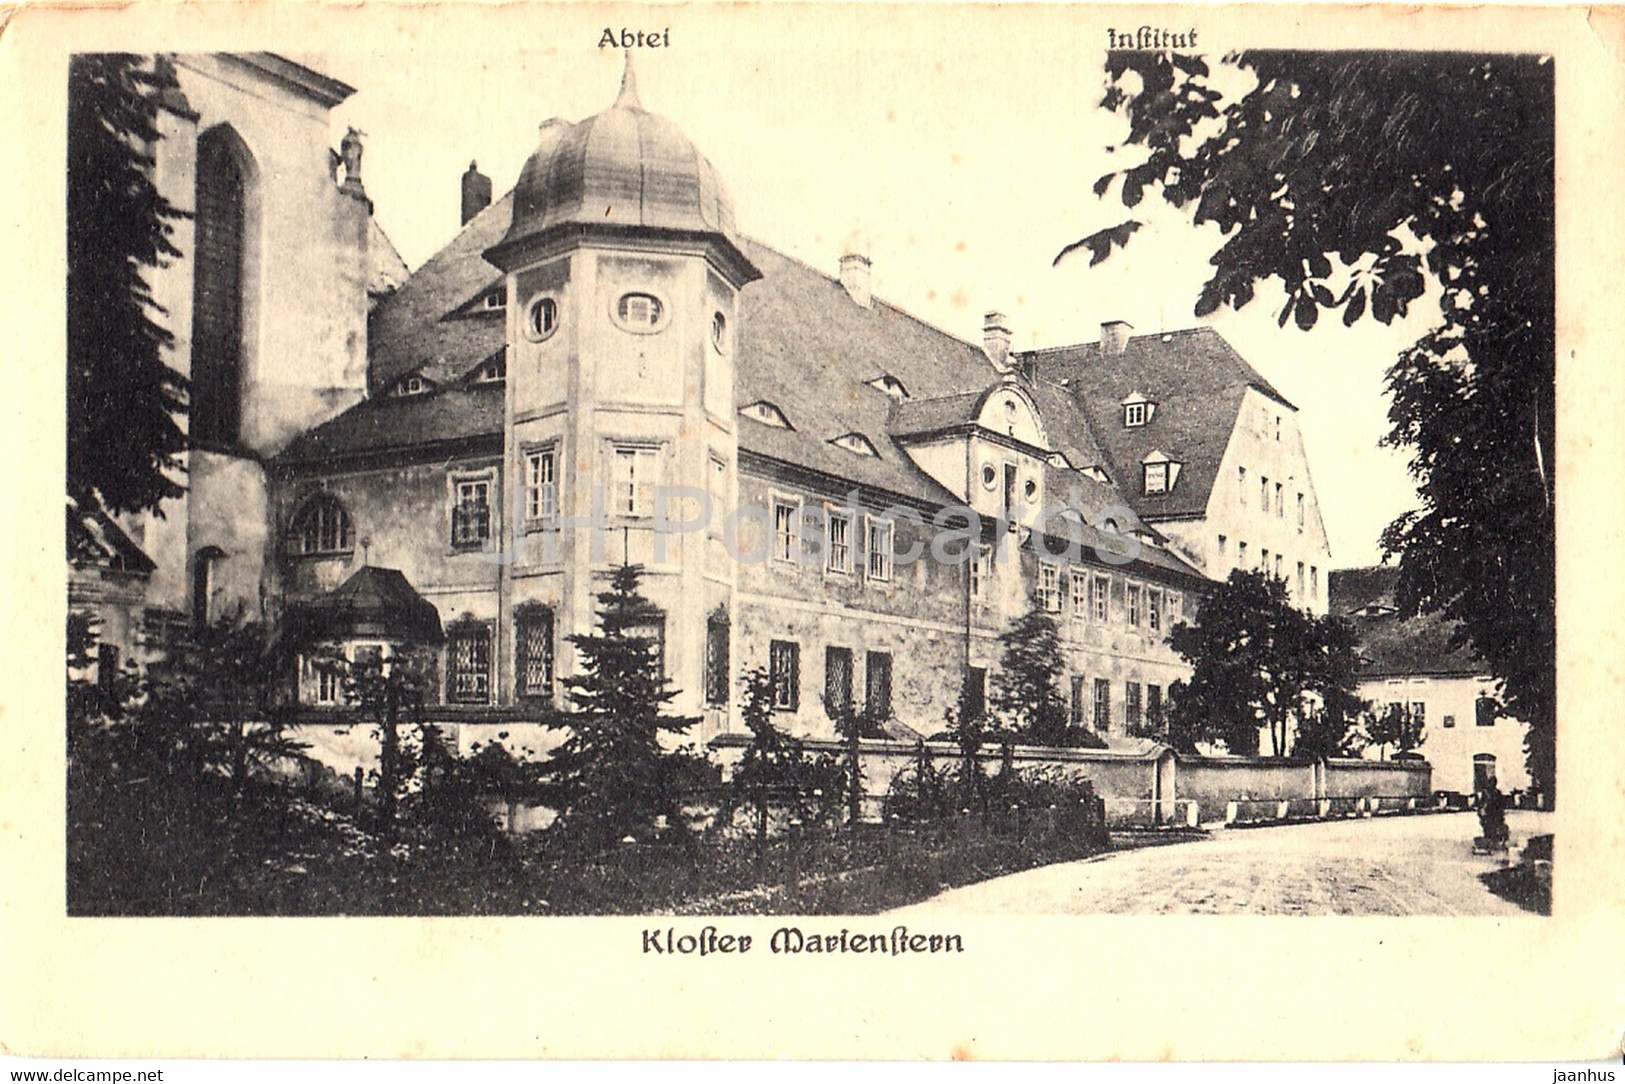 Kloster Marienstern - Abtei - Institut - 45080 - Old Postcard - Germany - Unused - Panschwitz-Kuckau